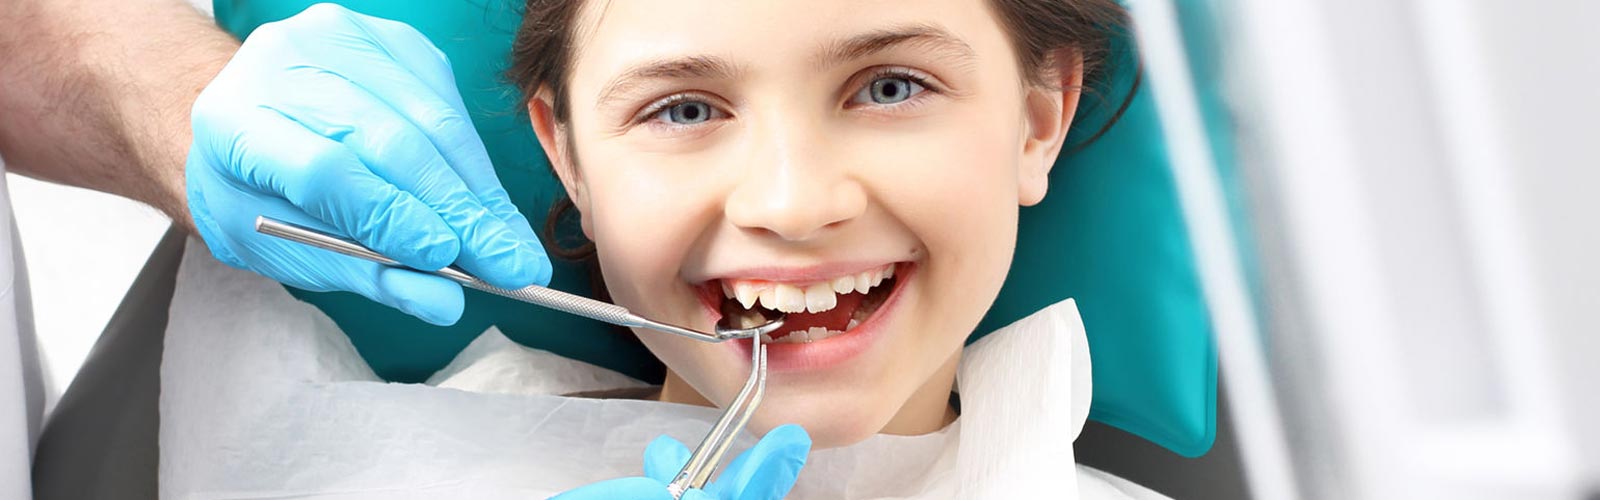 Centro Dental Roberto Cristóbal niña en odontología